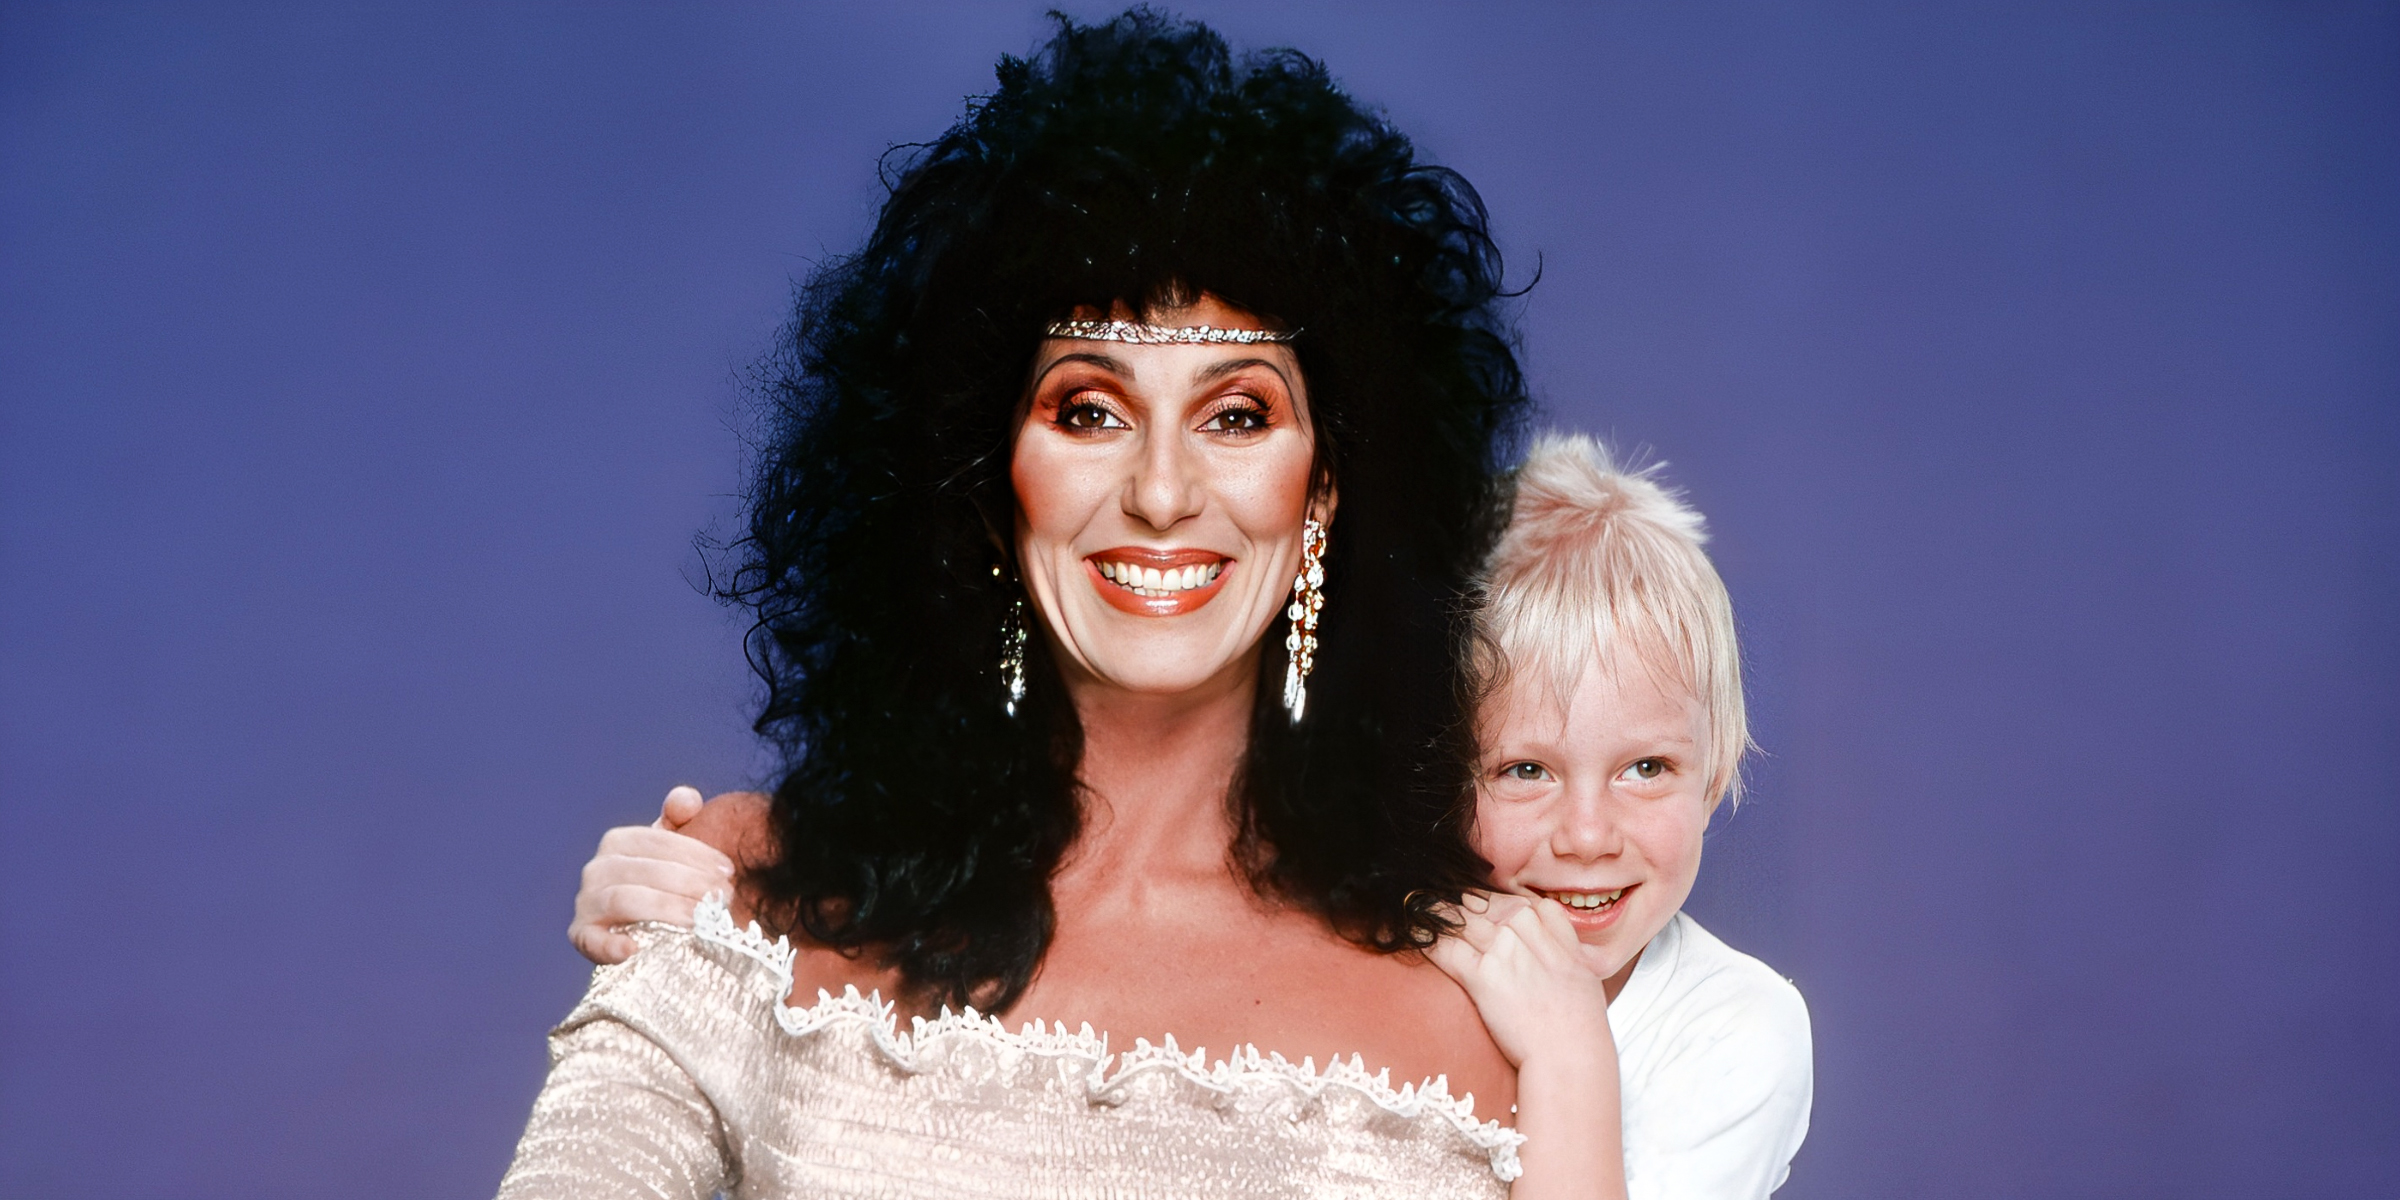 Cher et son fils Elijah Blue Allman | Source : Getty Images